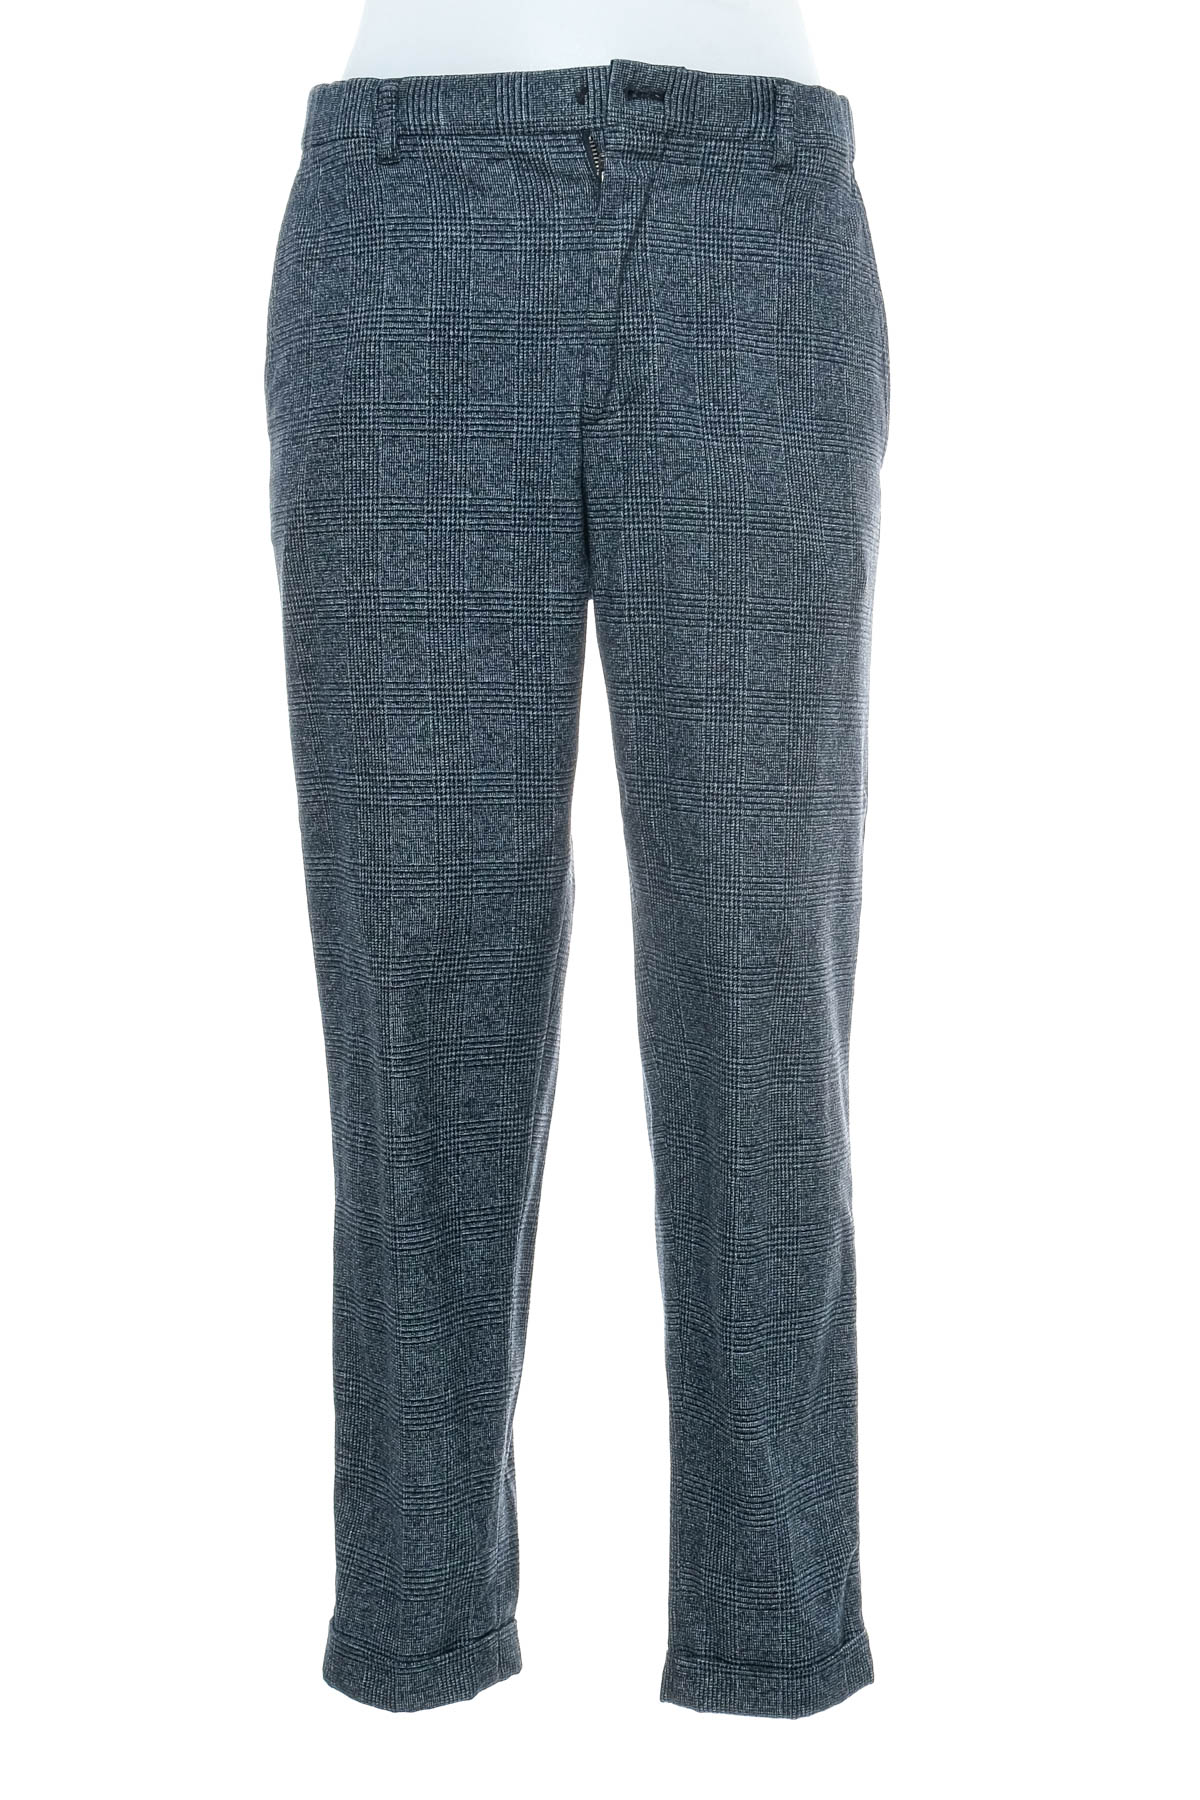 Men's trousers - Strellson - 0